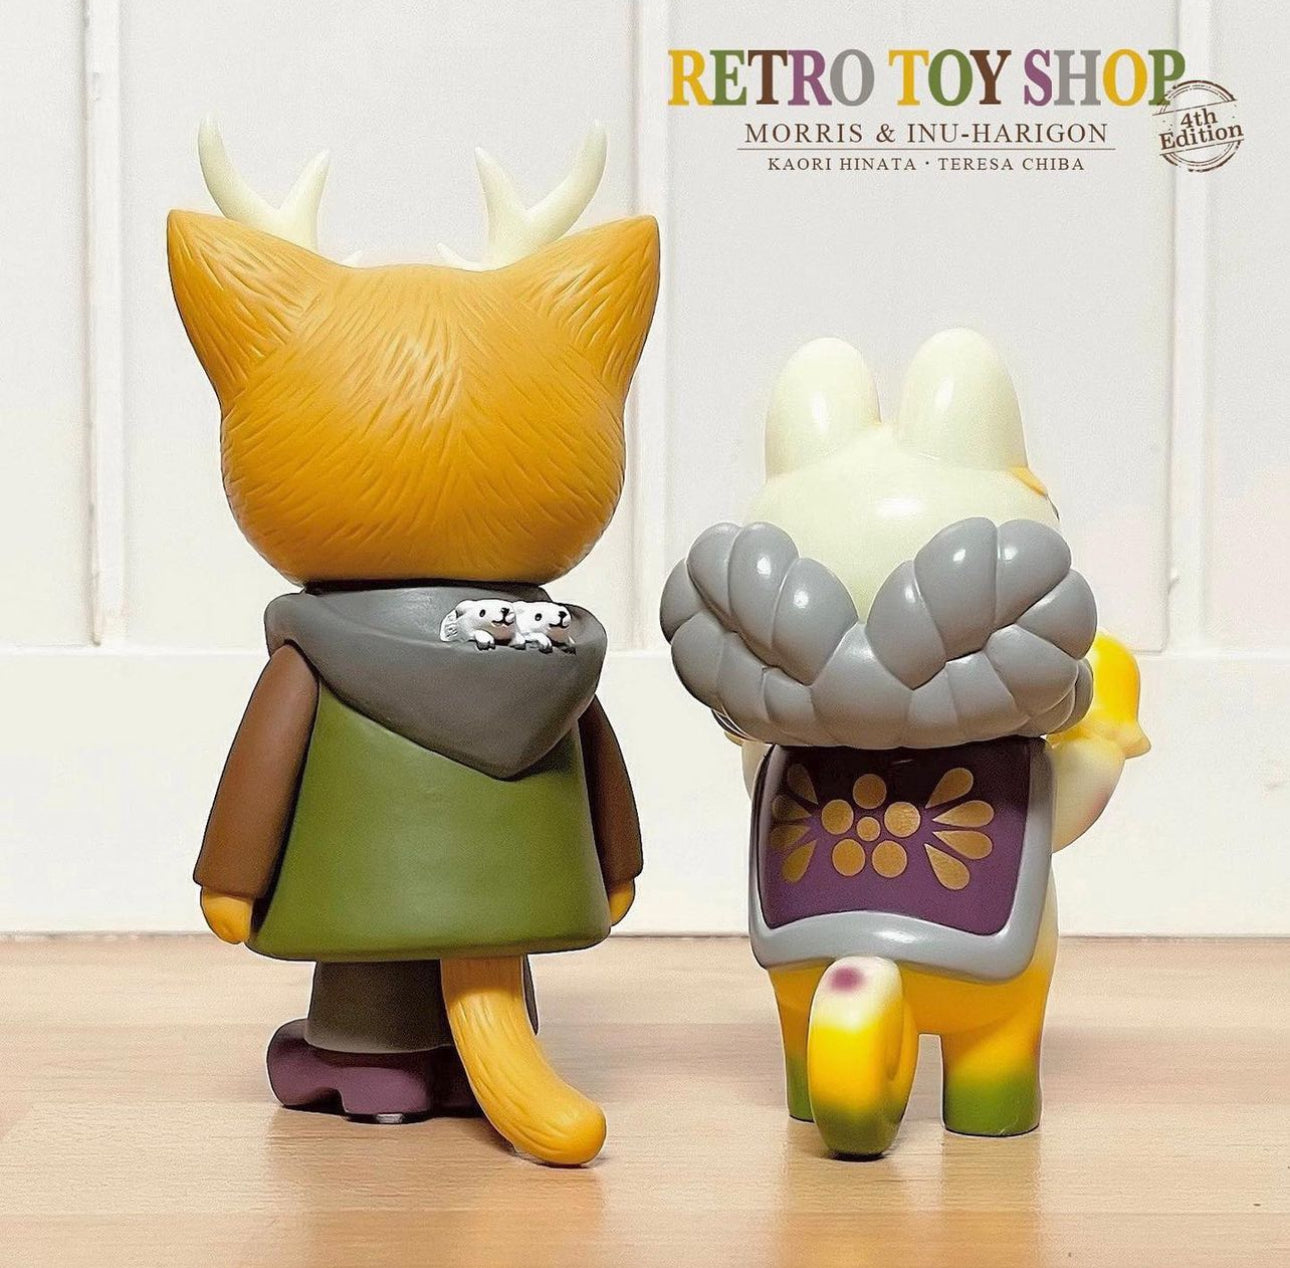 MORRIS Retro Toy Shop 4th Edition by Kaori Hinata